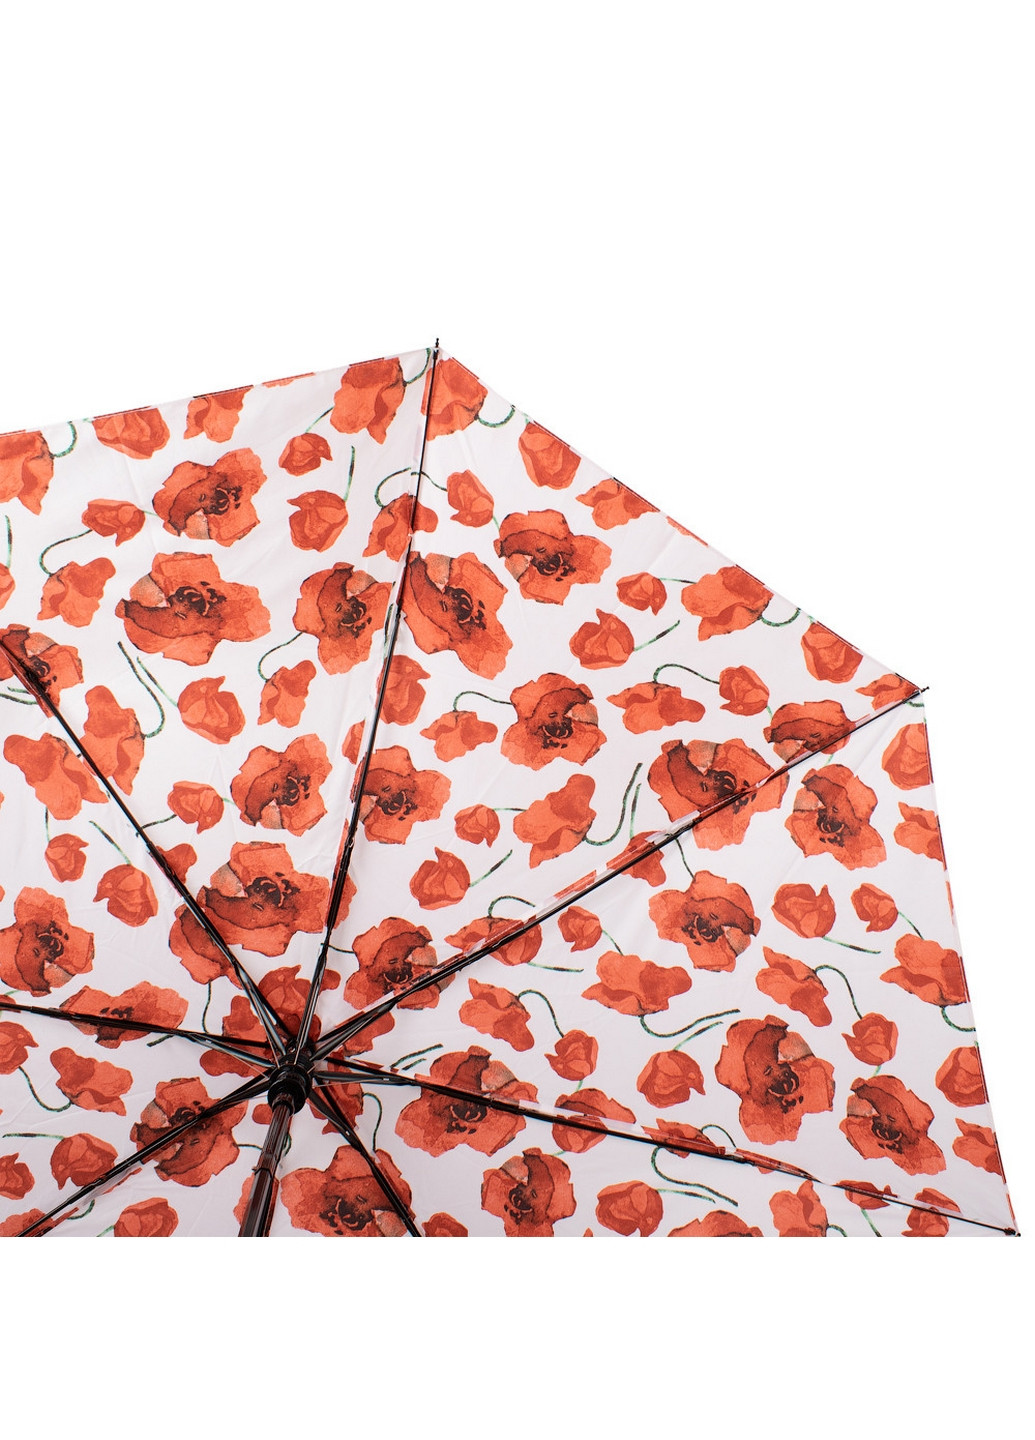 Складной женский зонт полуавтомат 88 см Happy Rain (260285441)